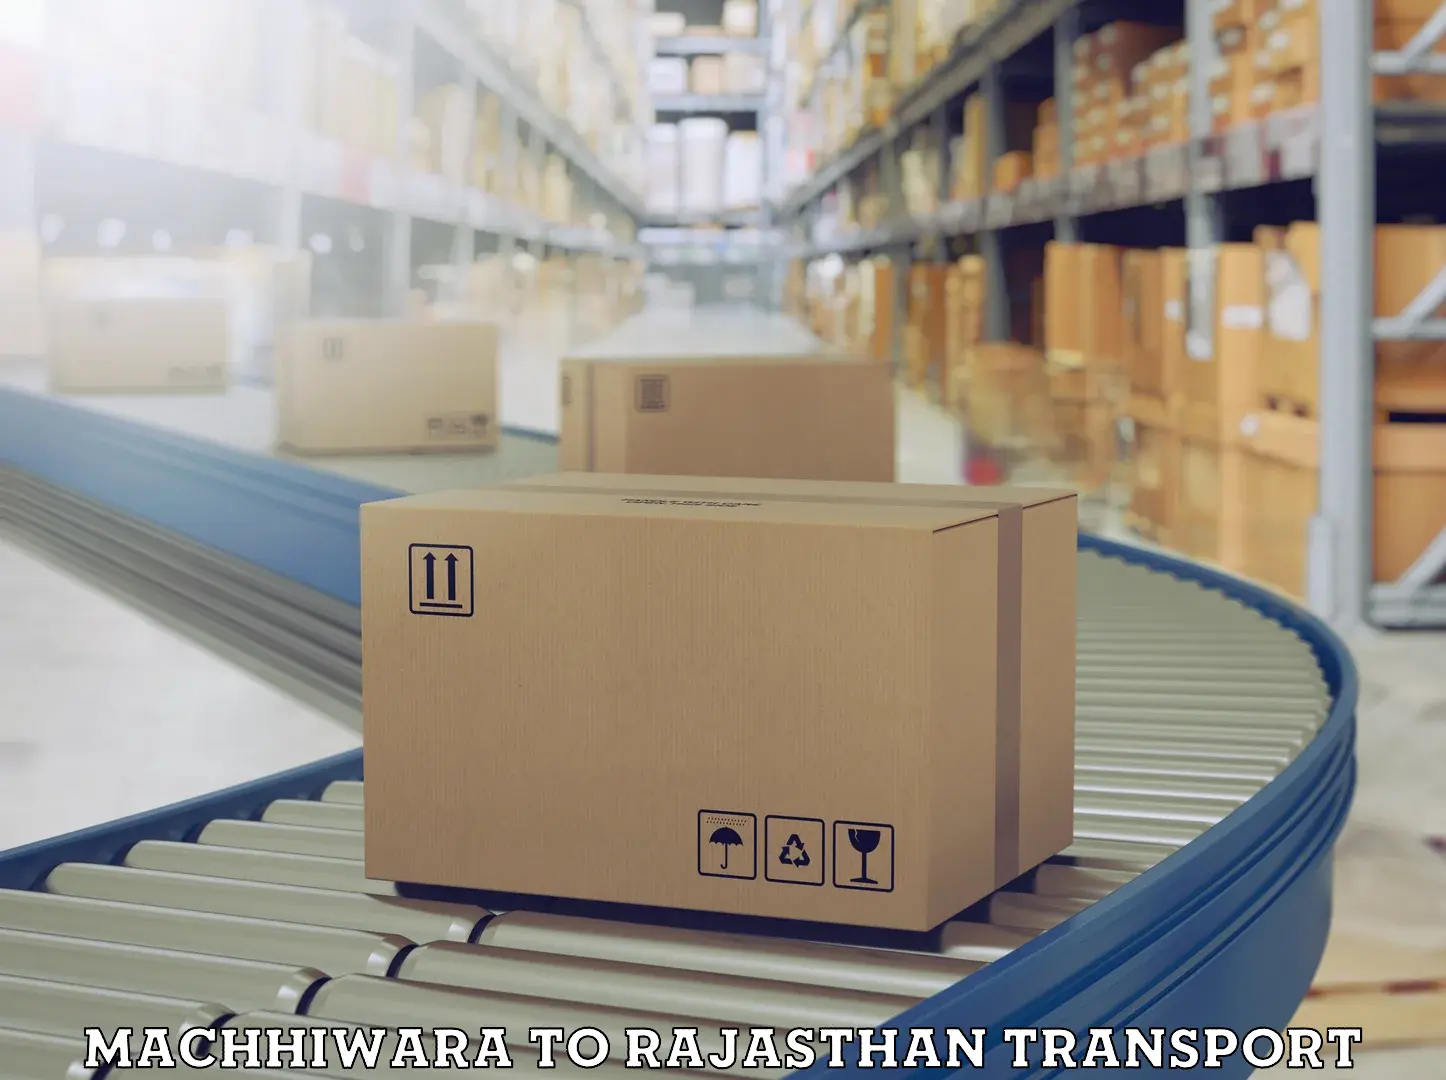 Container transport service Machhiwara to Rajasthan